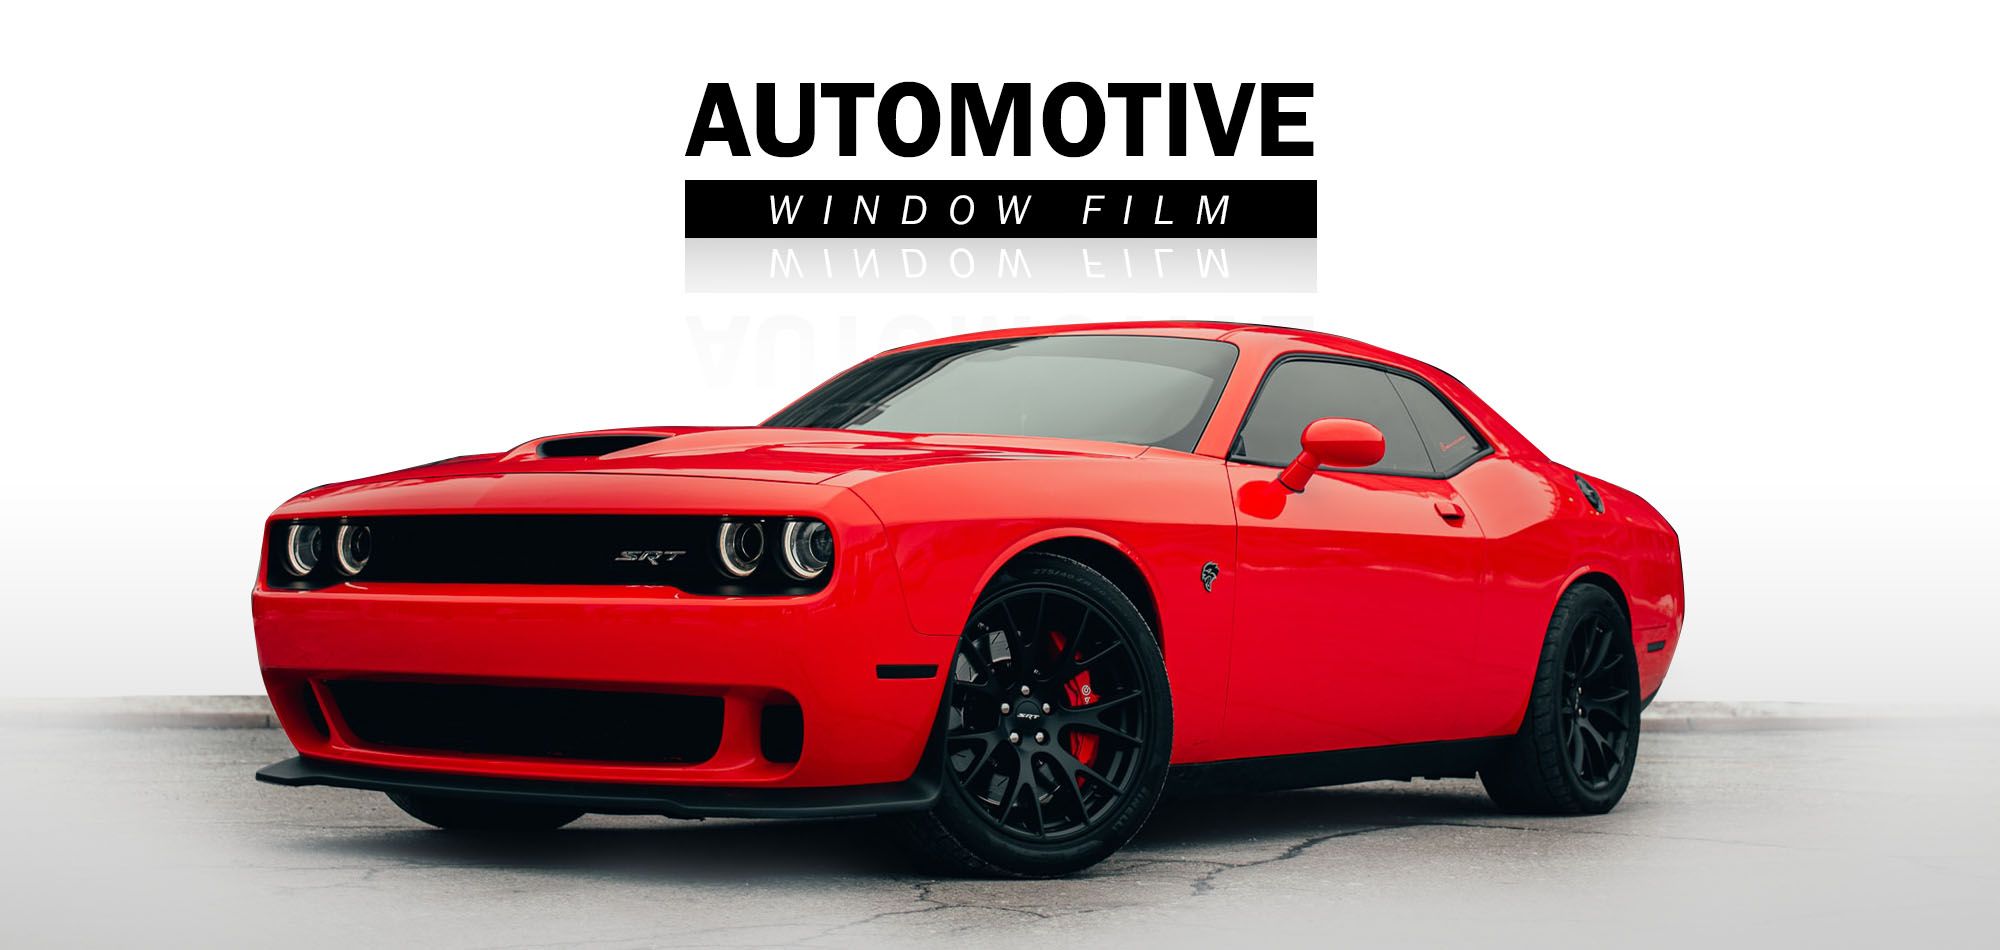 Automotive window film